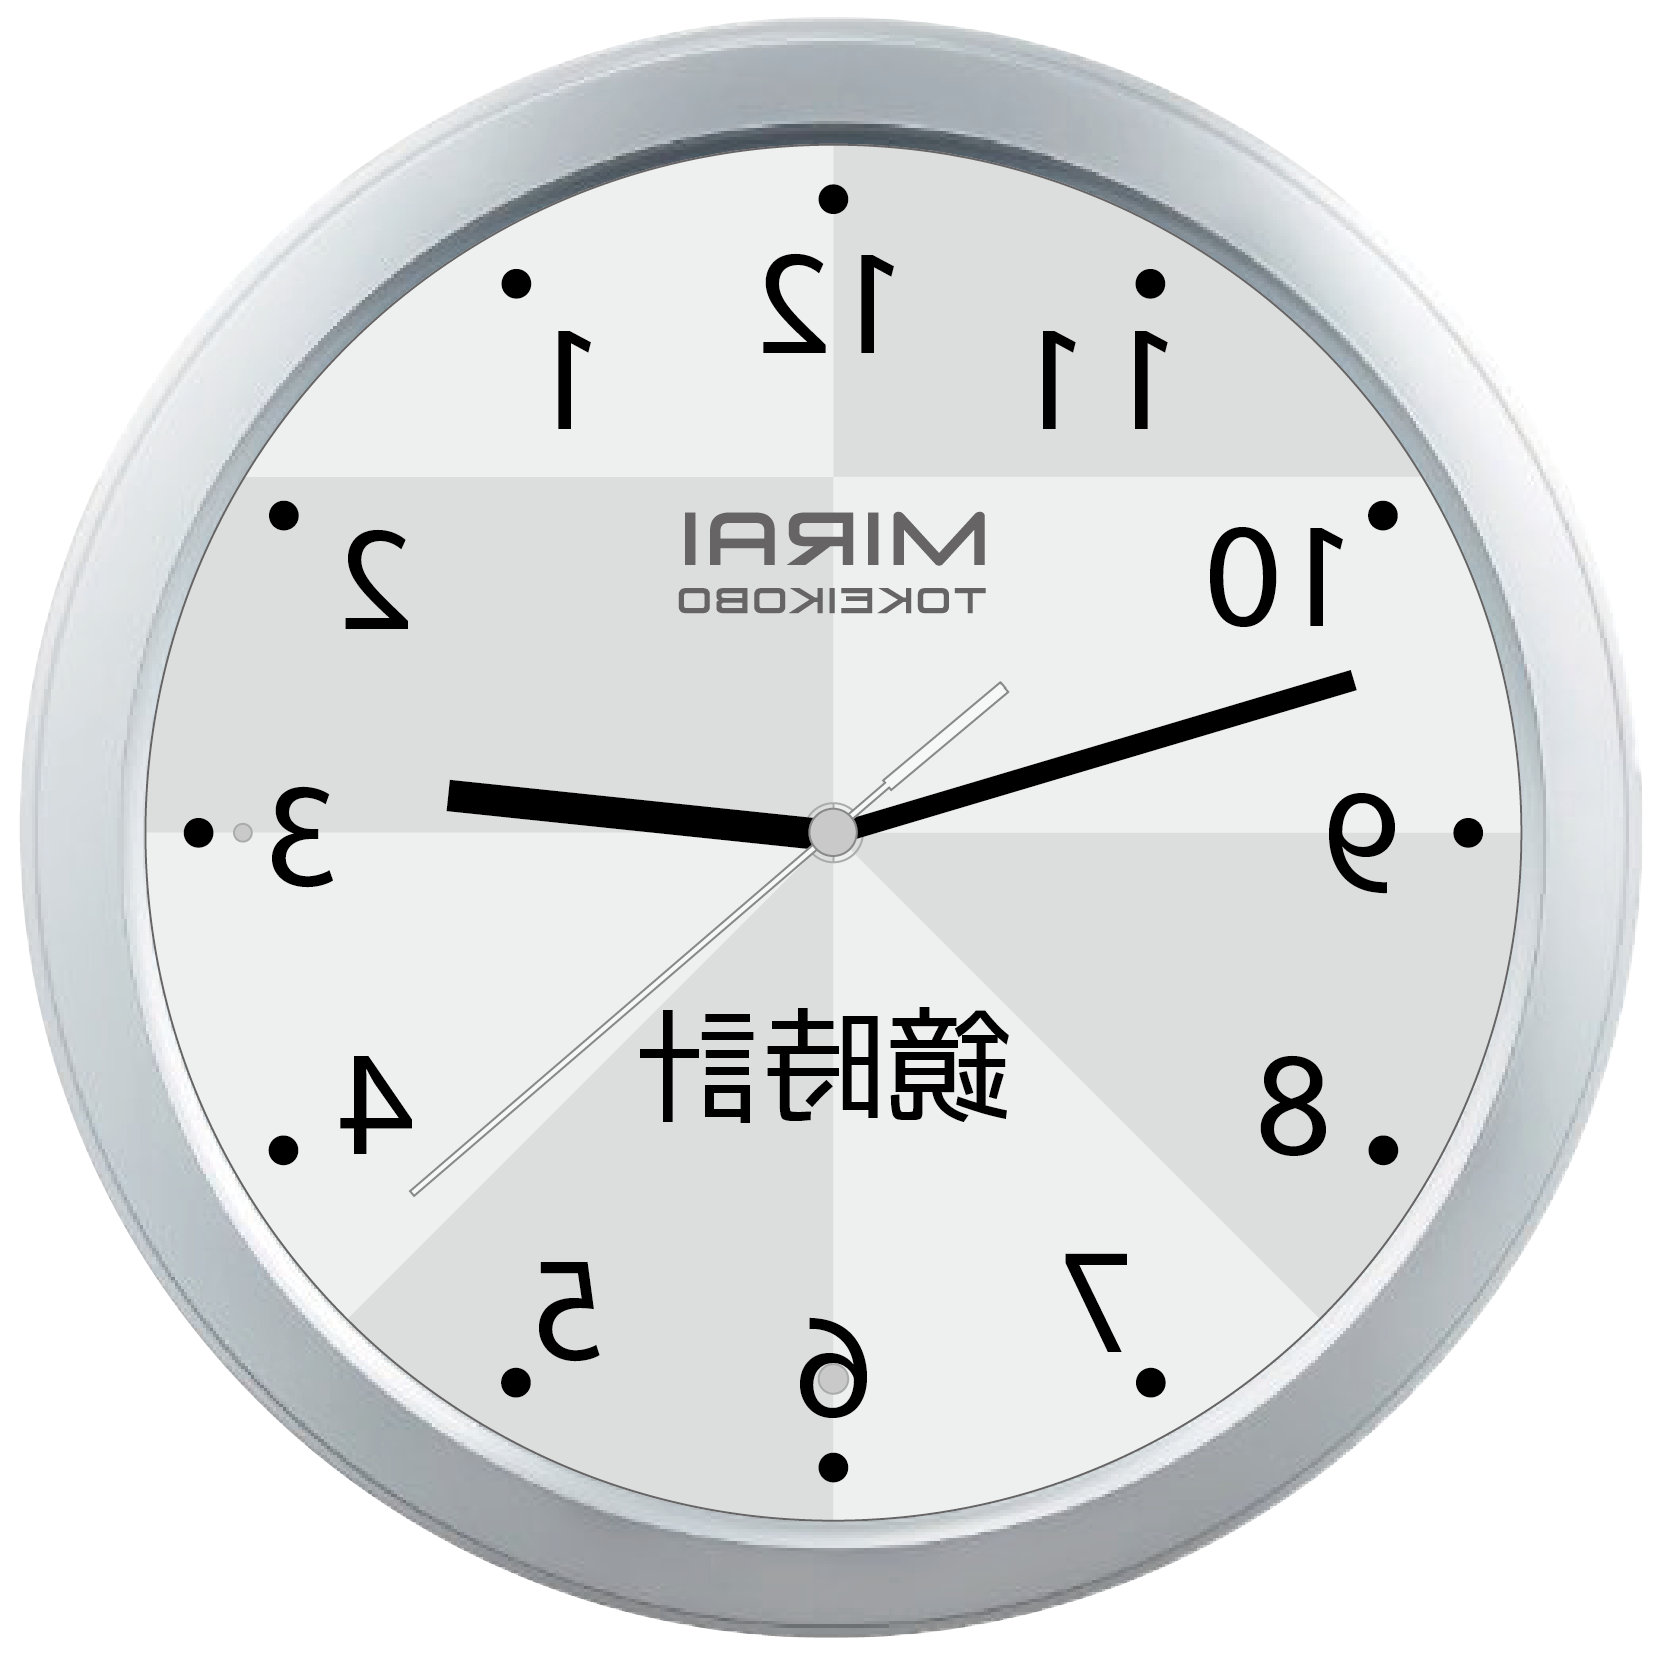 逆回転時計をご購入される際には「鏡時計」と「脳トレ時計」の違いにご注意くだだい。